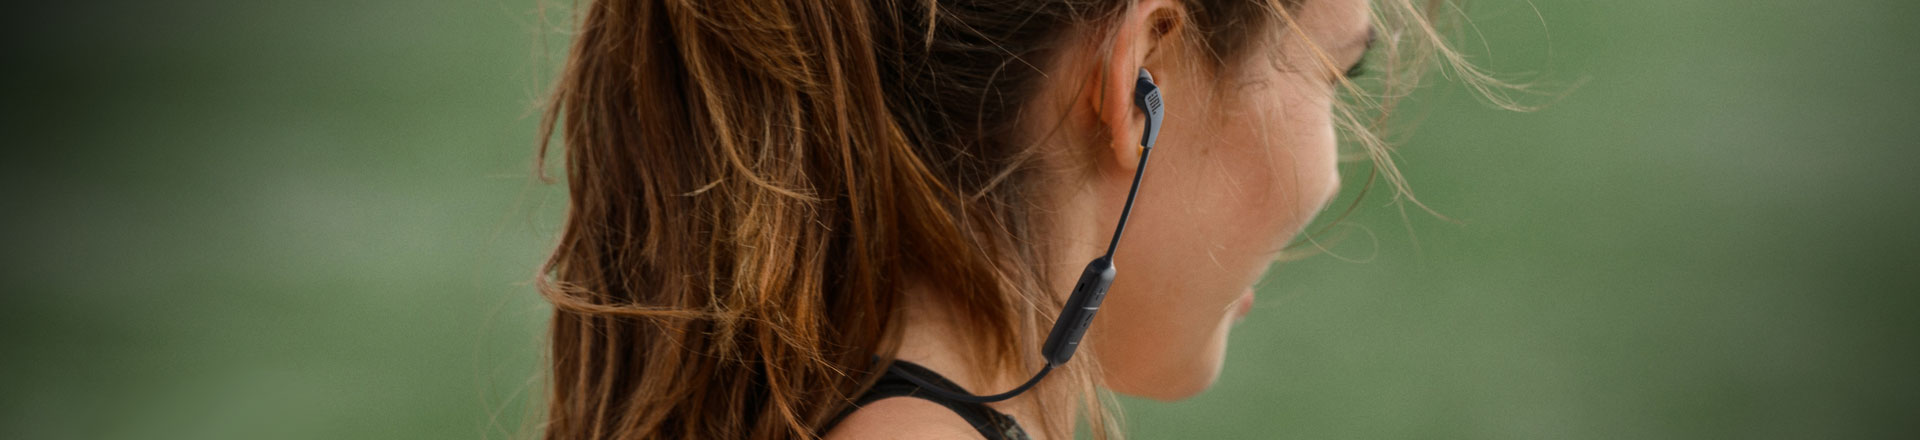 JBL: Endurance Run 2 Wireless - powrót do sprawdzonych rozwiązań w słuchawkach dla ludzi aktywnych